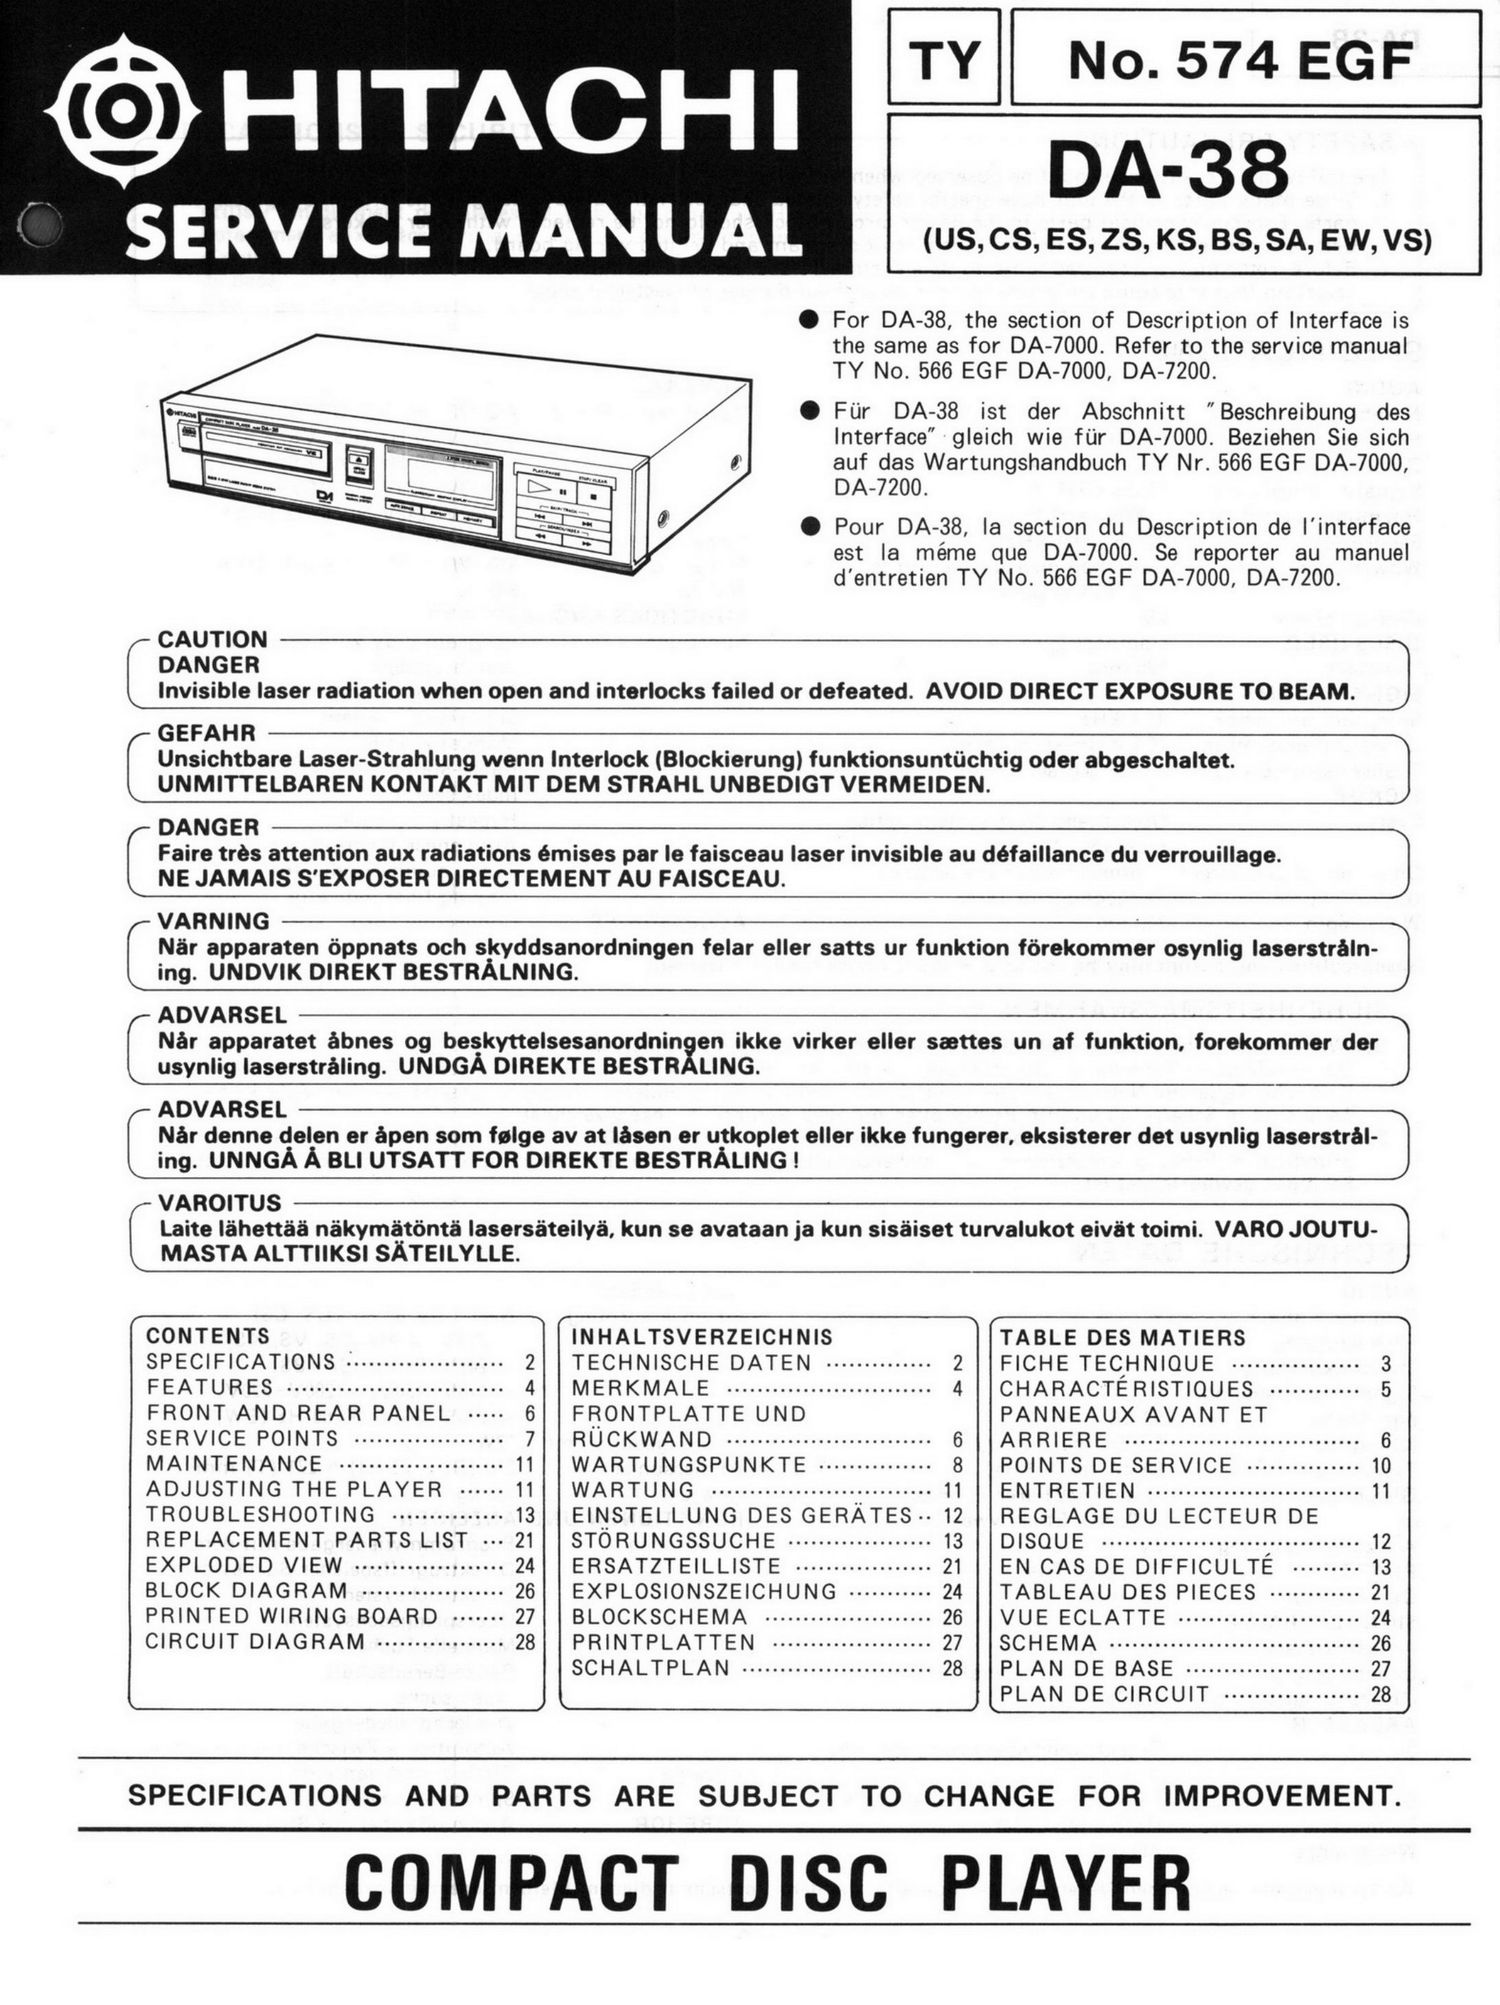 Hitachi DA 38 Service Manual